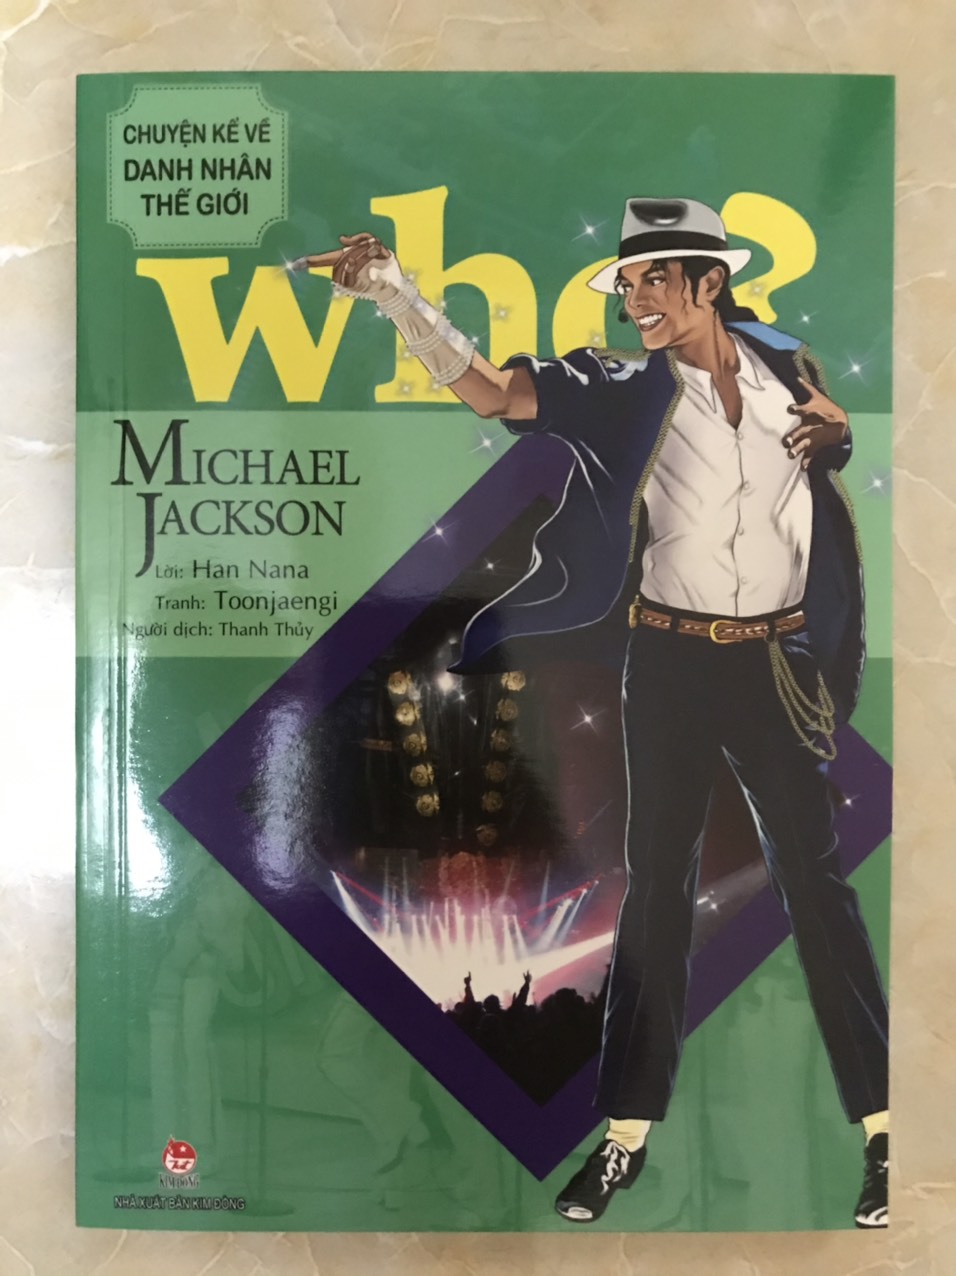 WHO? Chuyện kể về danh nhân thế giới - Michael Jackson